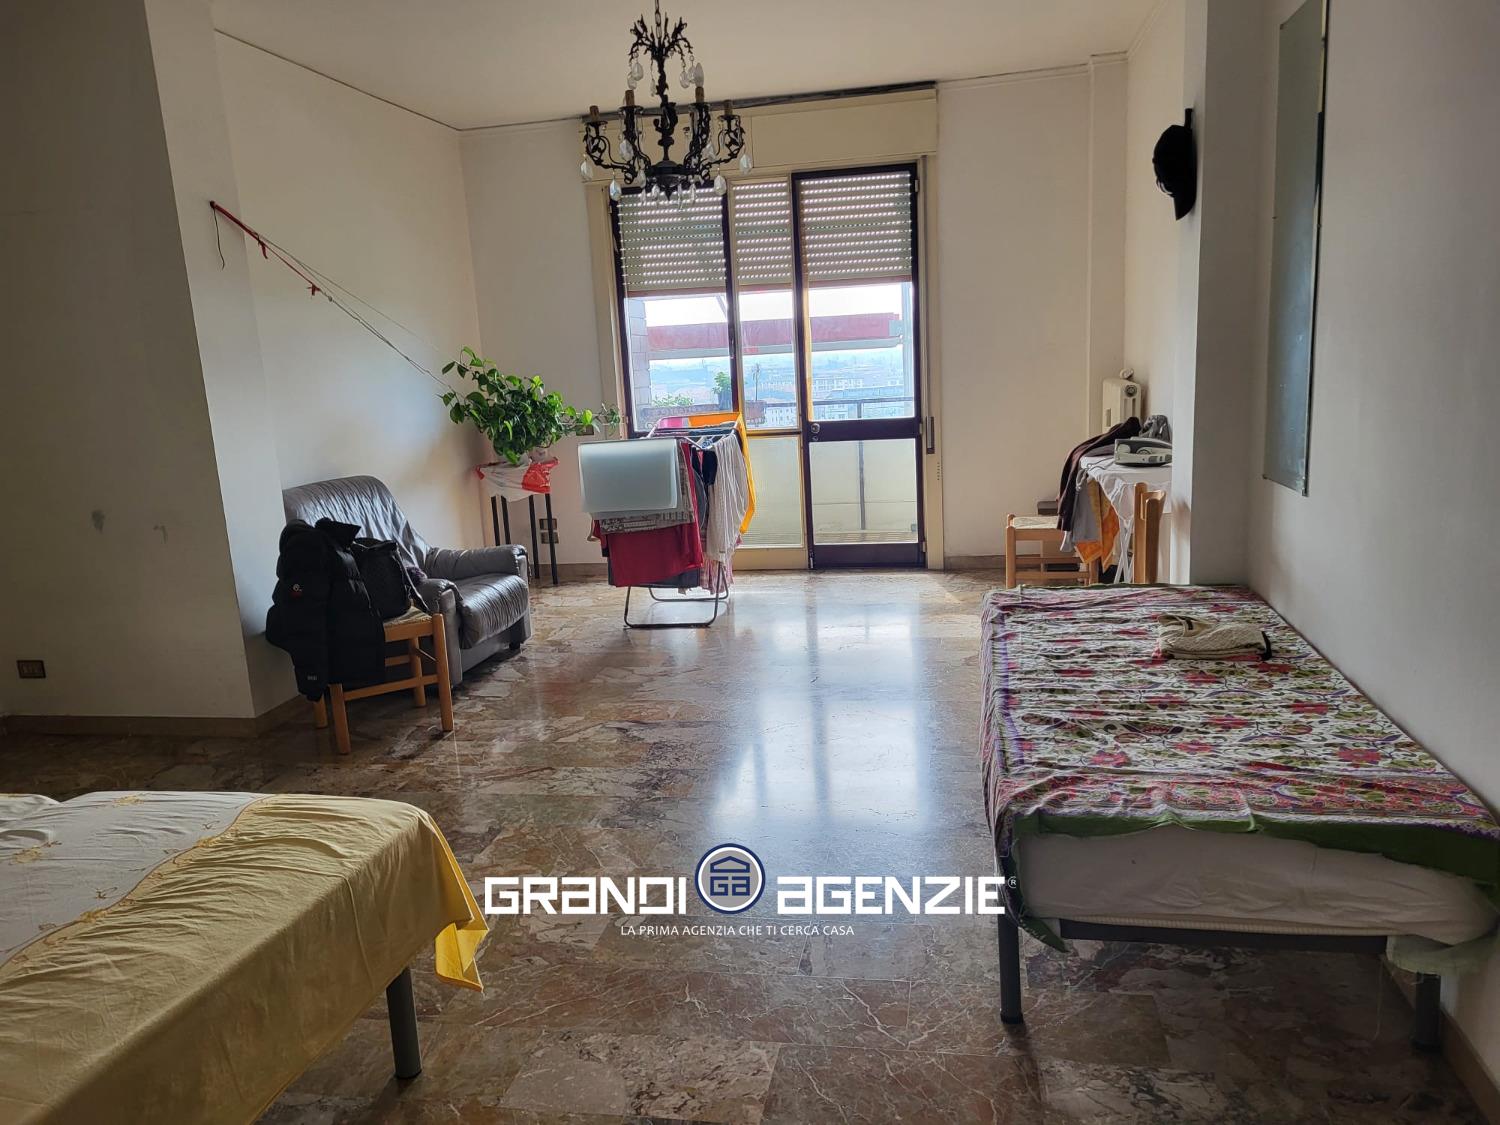 Appartamento in vendita a Treviso, 5 locali, prezzo € 105.000 | PortaleAgenzieImmobiliari.it